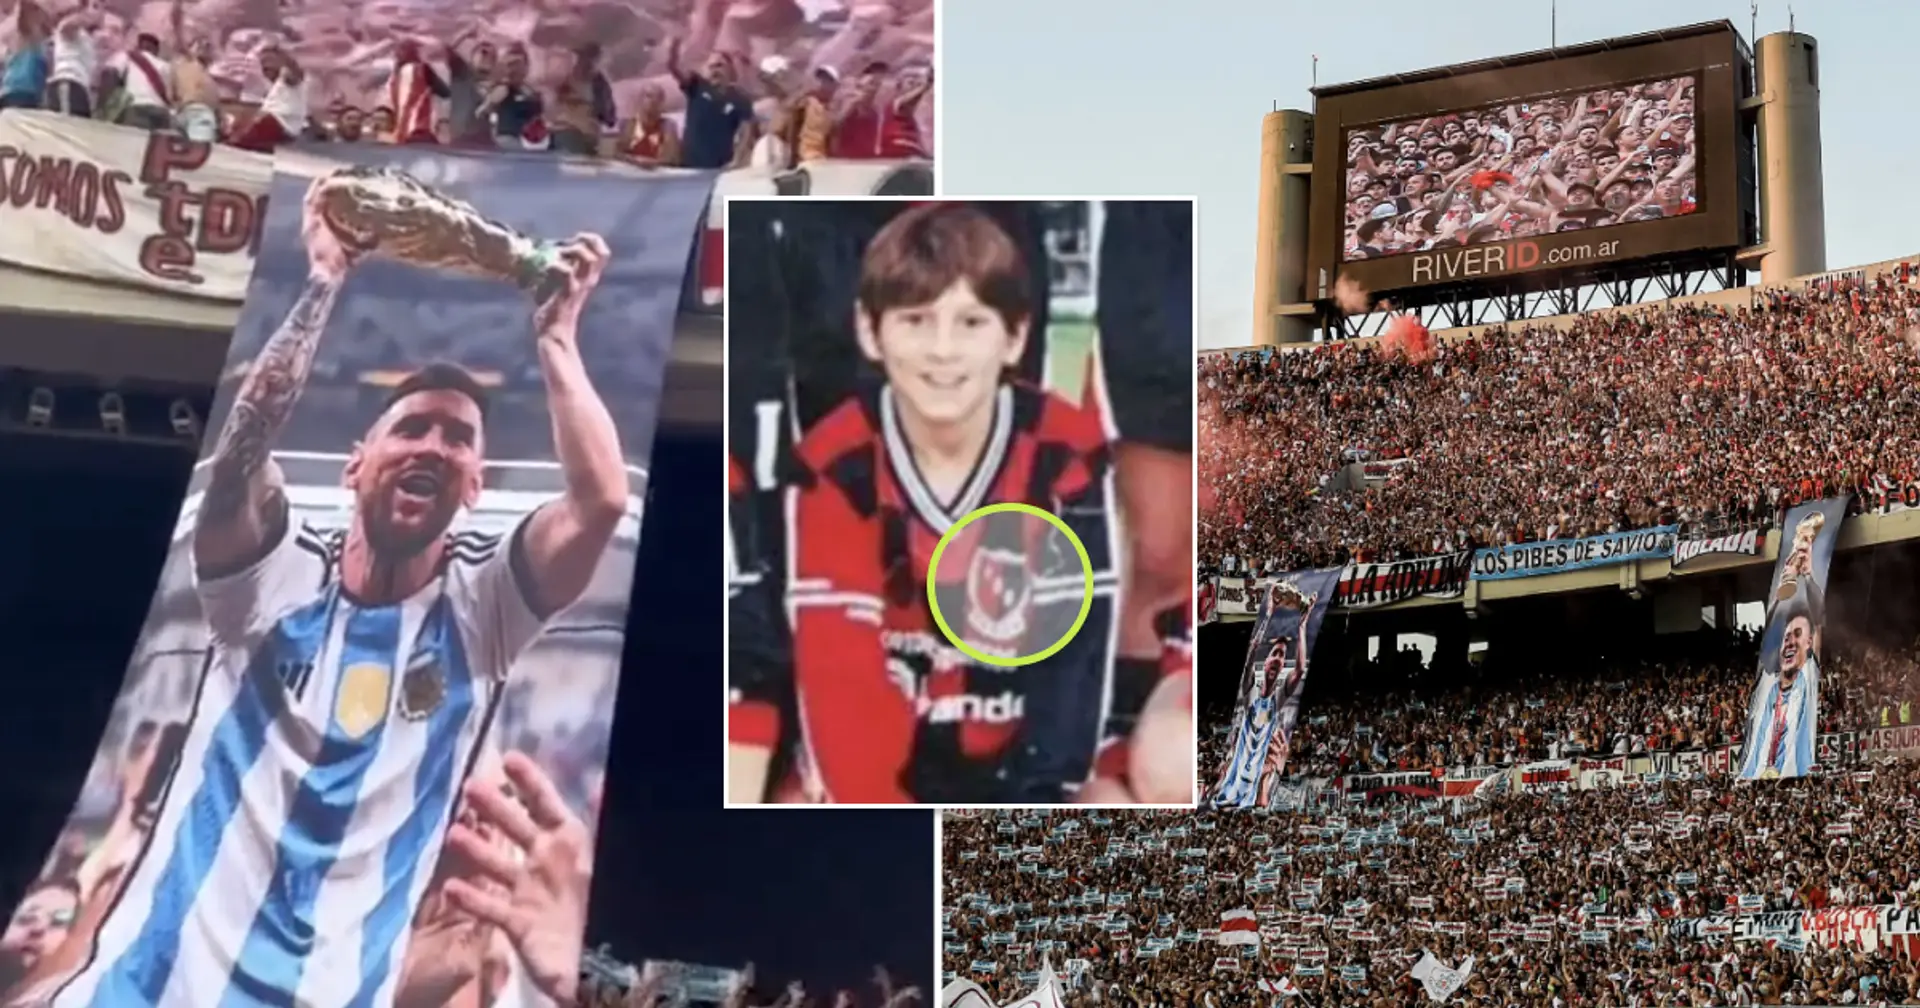 Les fans de River Plate rendent un hommage particulier aux champions du monde qui ont représenté le club – pourquoi Leo Messi a été inclus